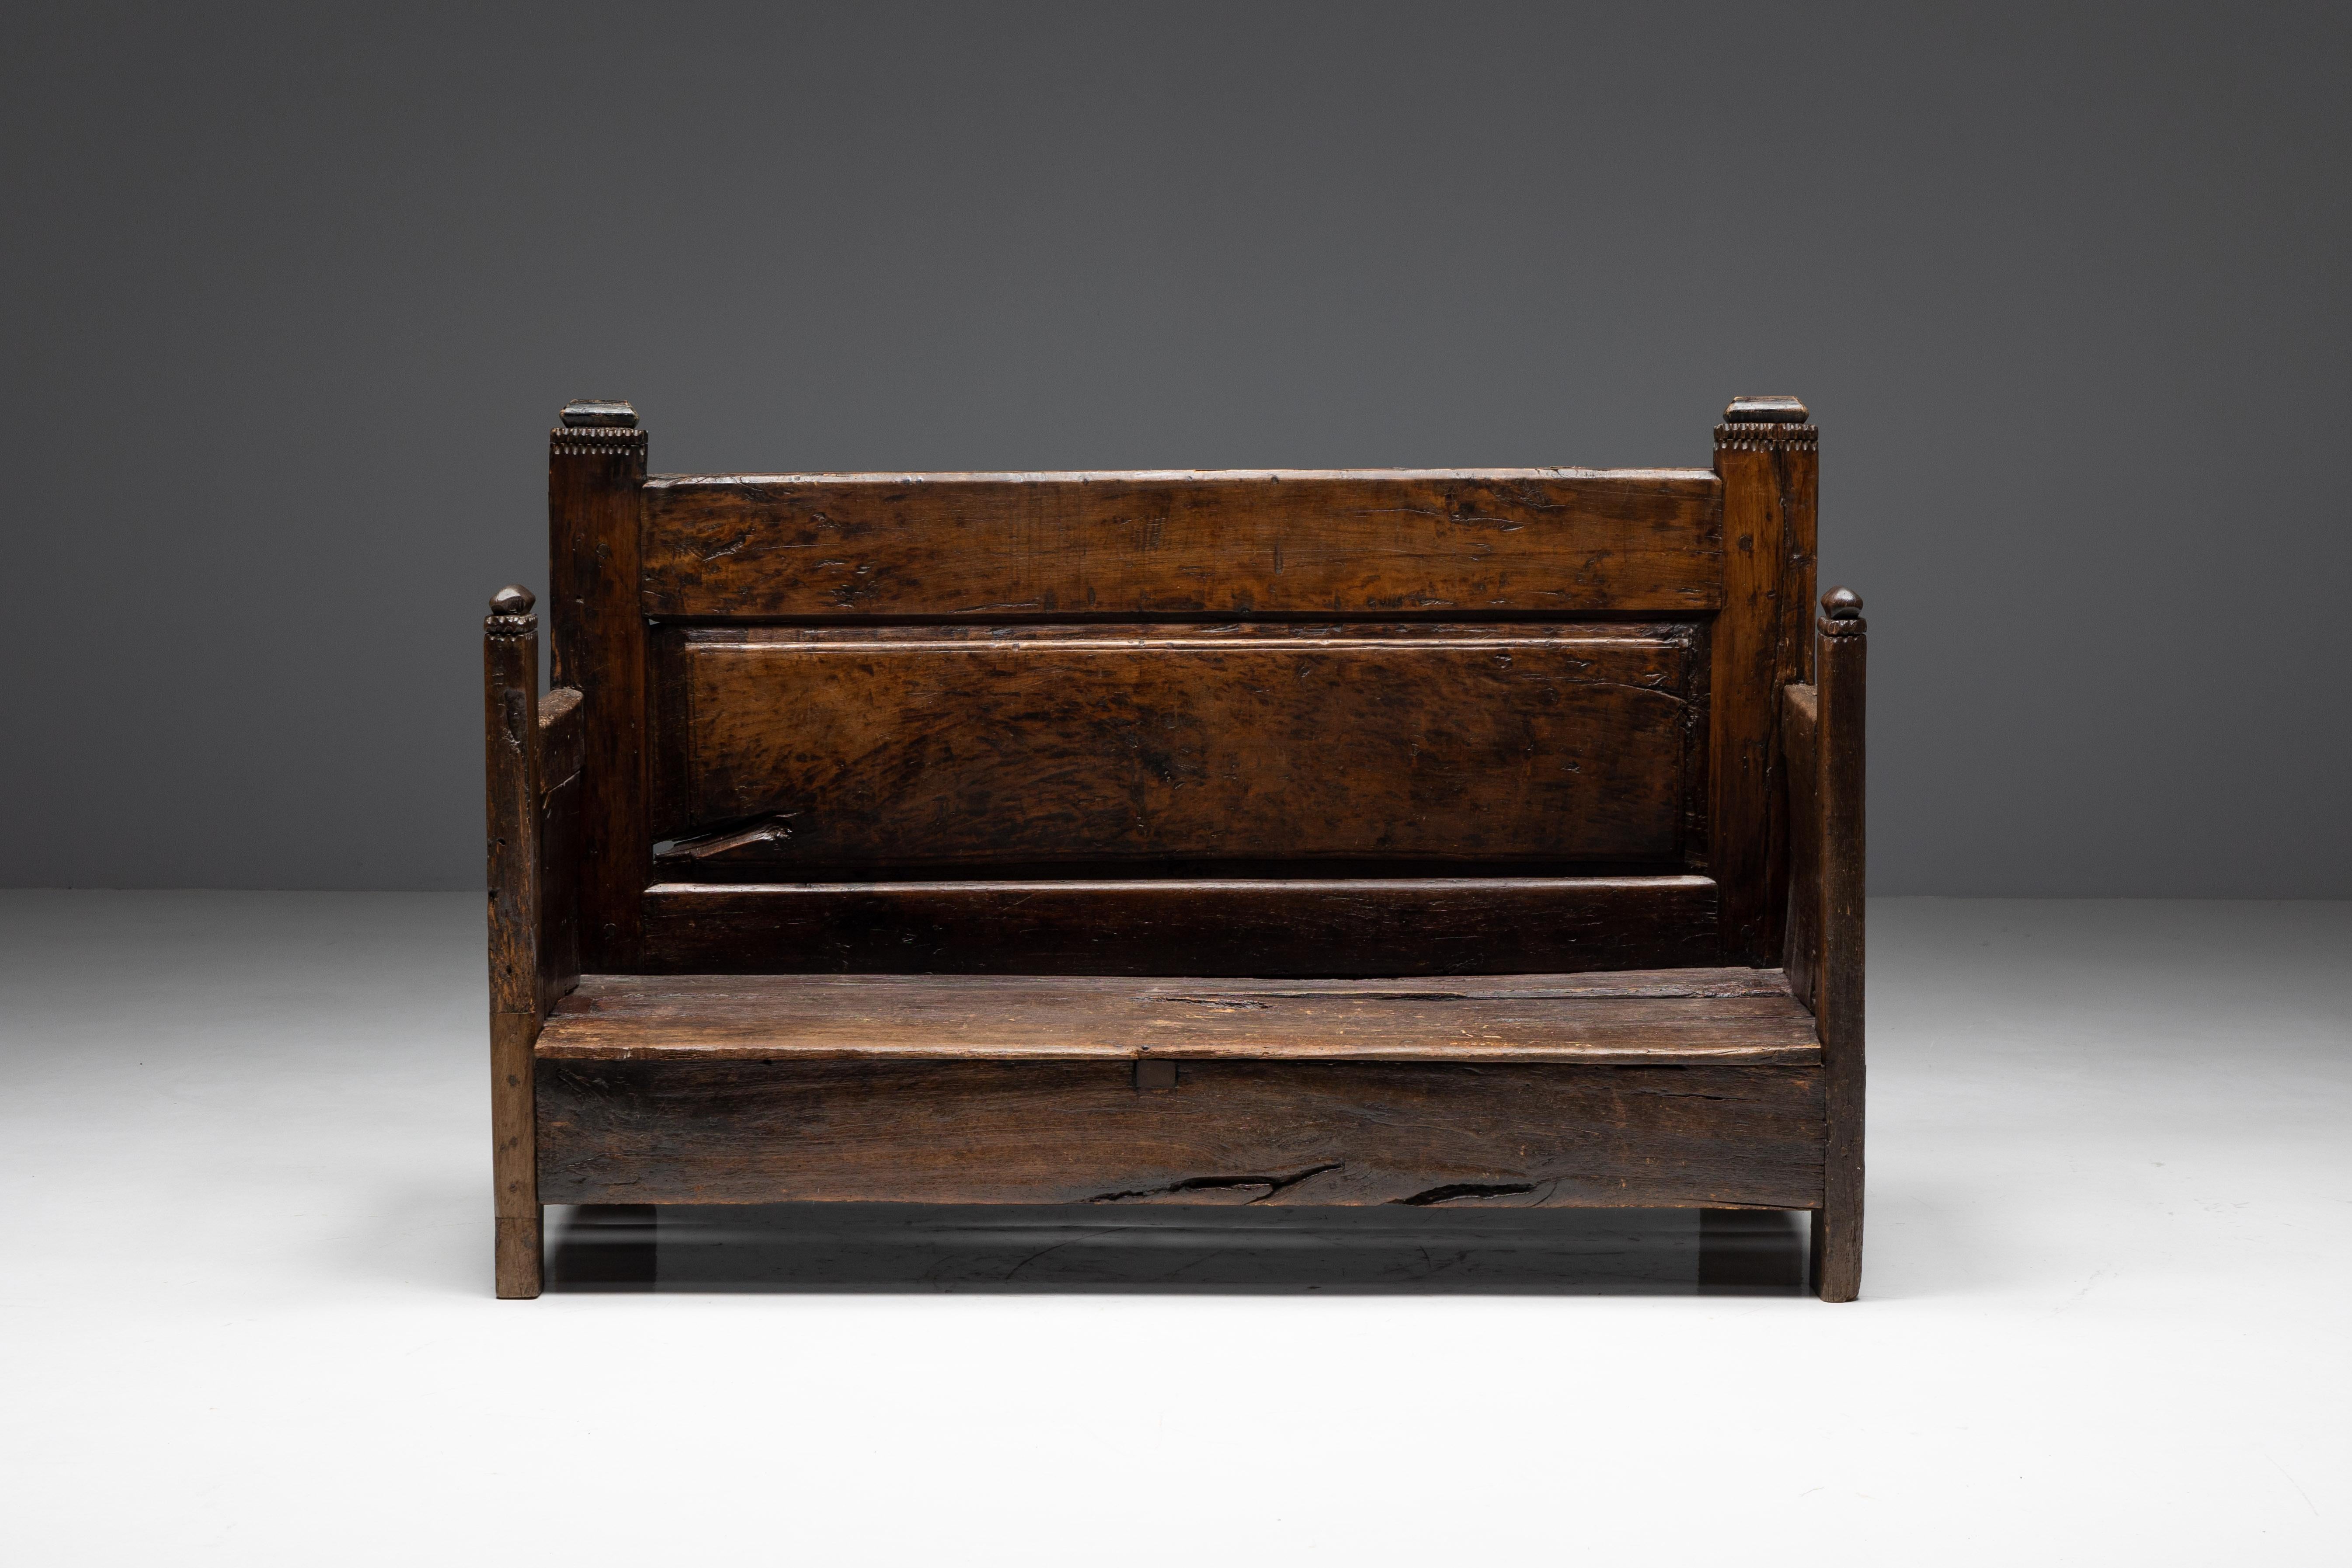 Rustikale Art-Populaire-Bank aus dem Frankreich des 19. Jahrhunderts mit einem charmanten primitiven Charakter. Die aus robustem Holz gefertigte Bank weist eine reiche Patina auf, die auf ihr Alter und ihre Geschichte hinweist. Sein schlichtes